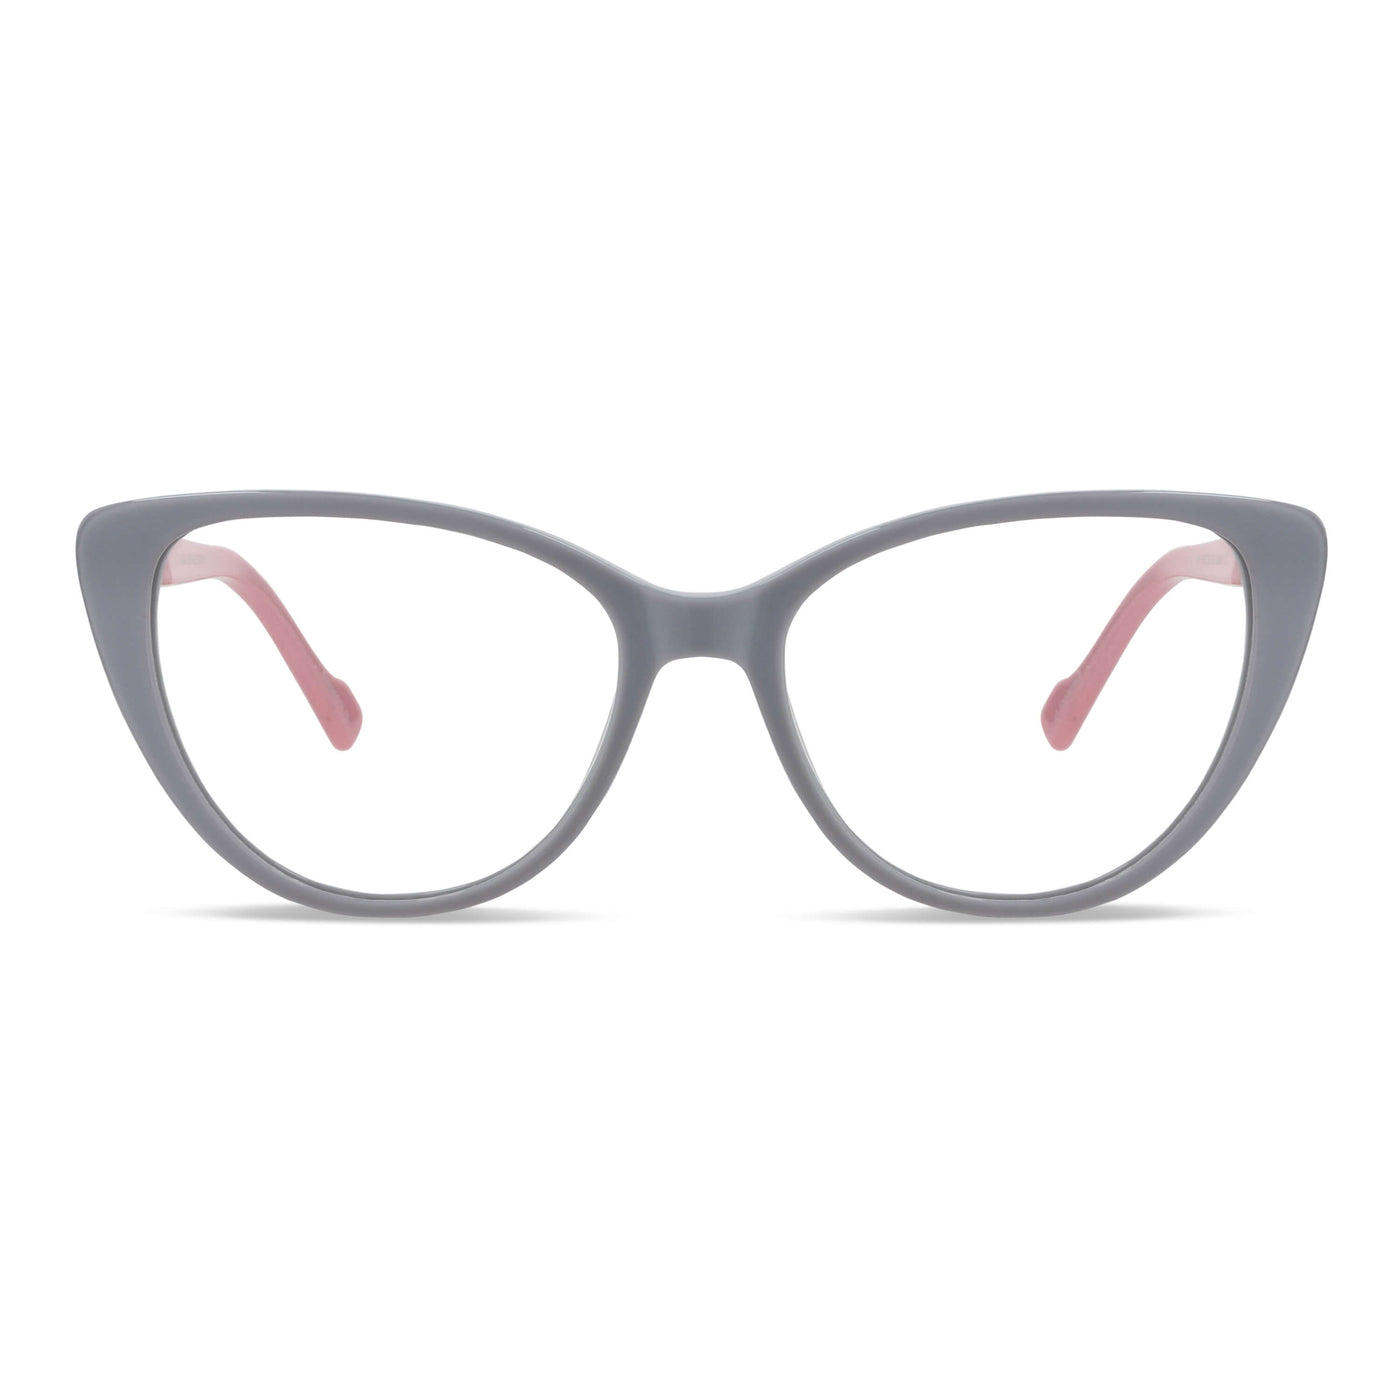  lentes opticos agatados blanco mujer cara redonda grande receta multifocal bifocal adelgazado filtro azul.jpg